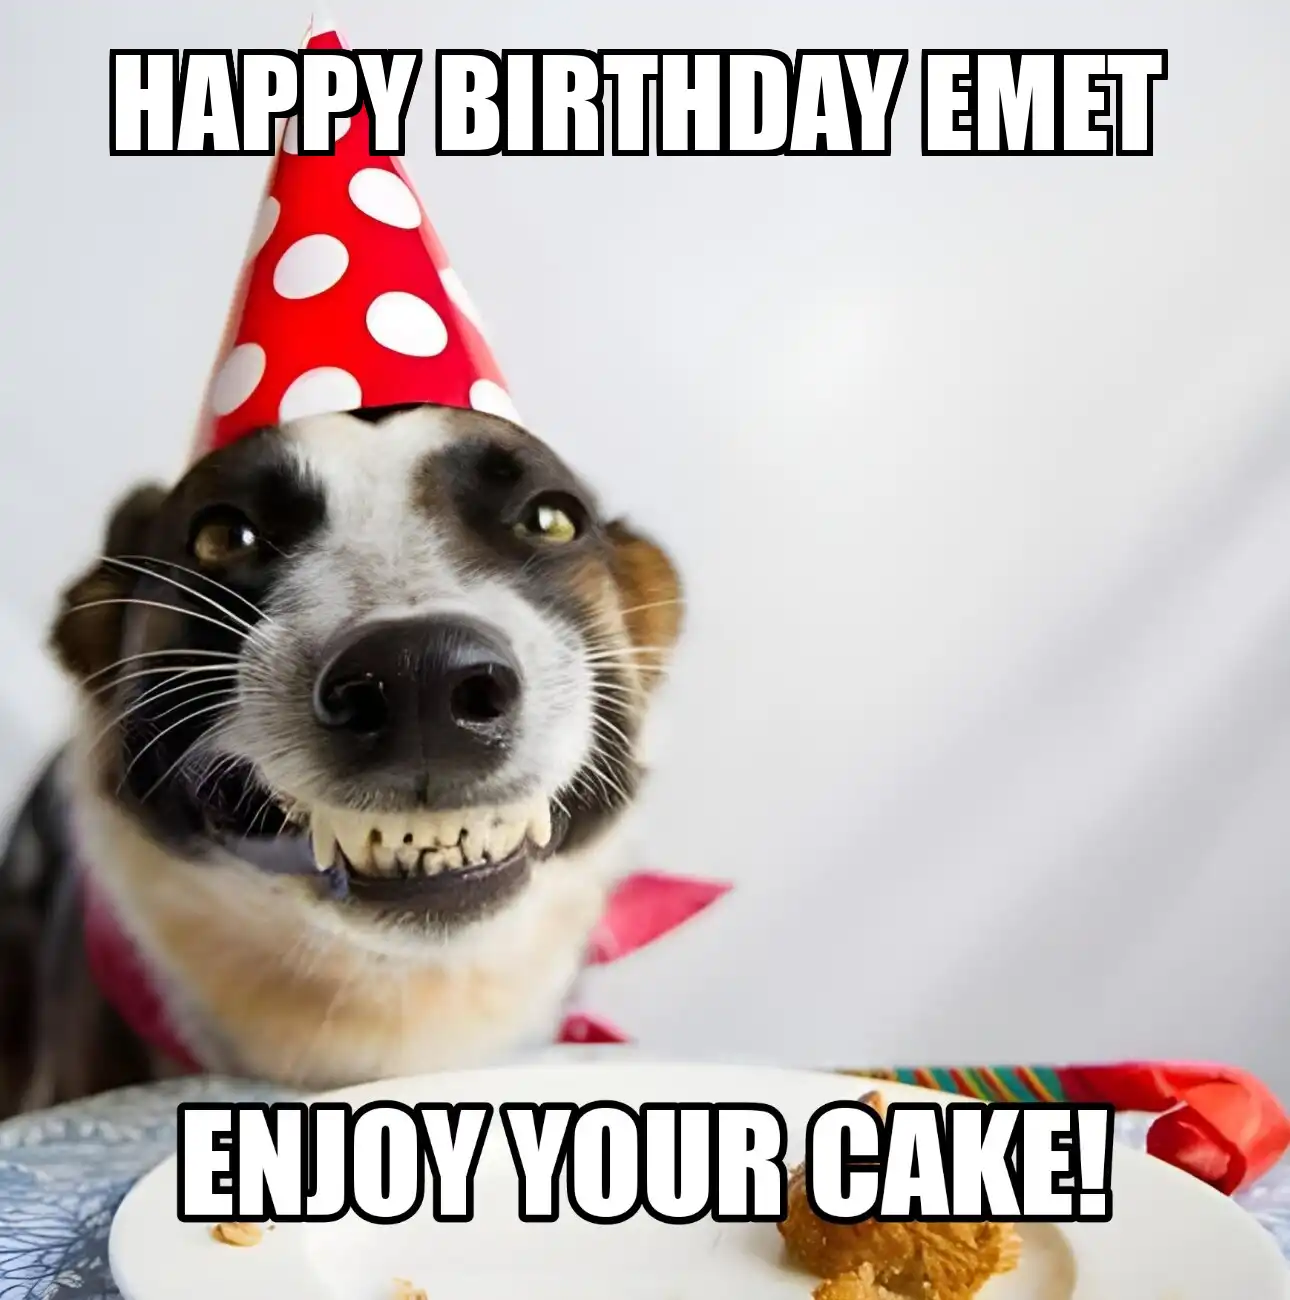 Happy Birthday Emet Enjoy Your Cake Dog Meme